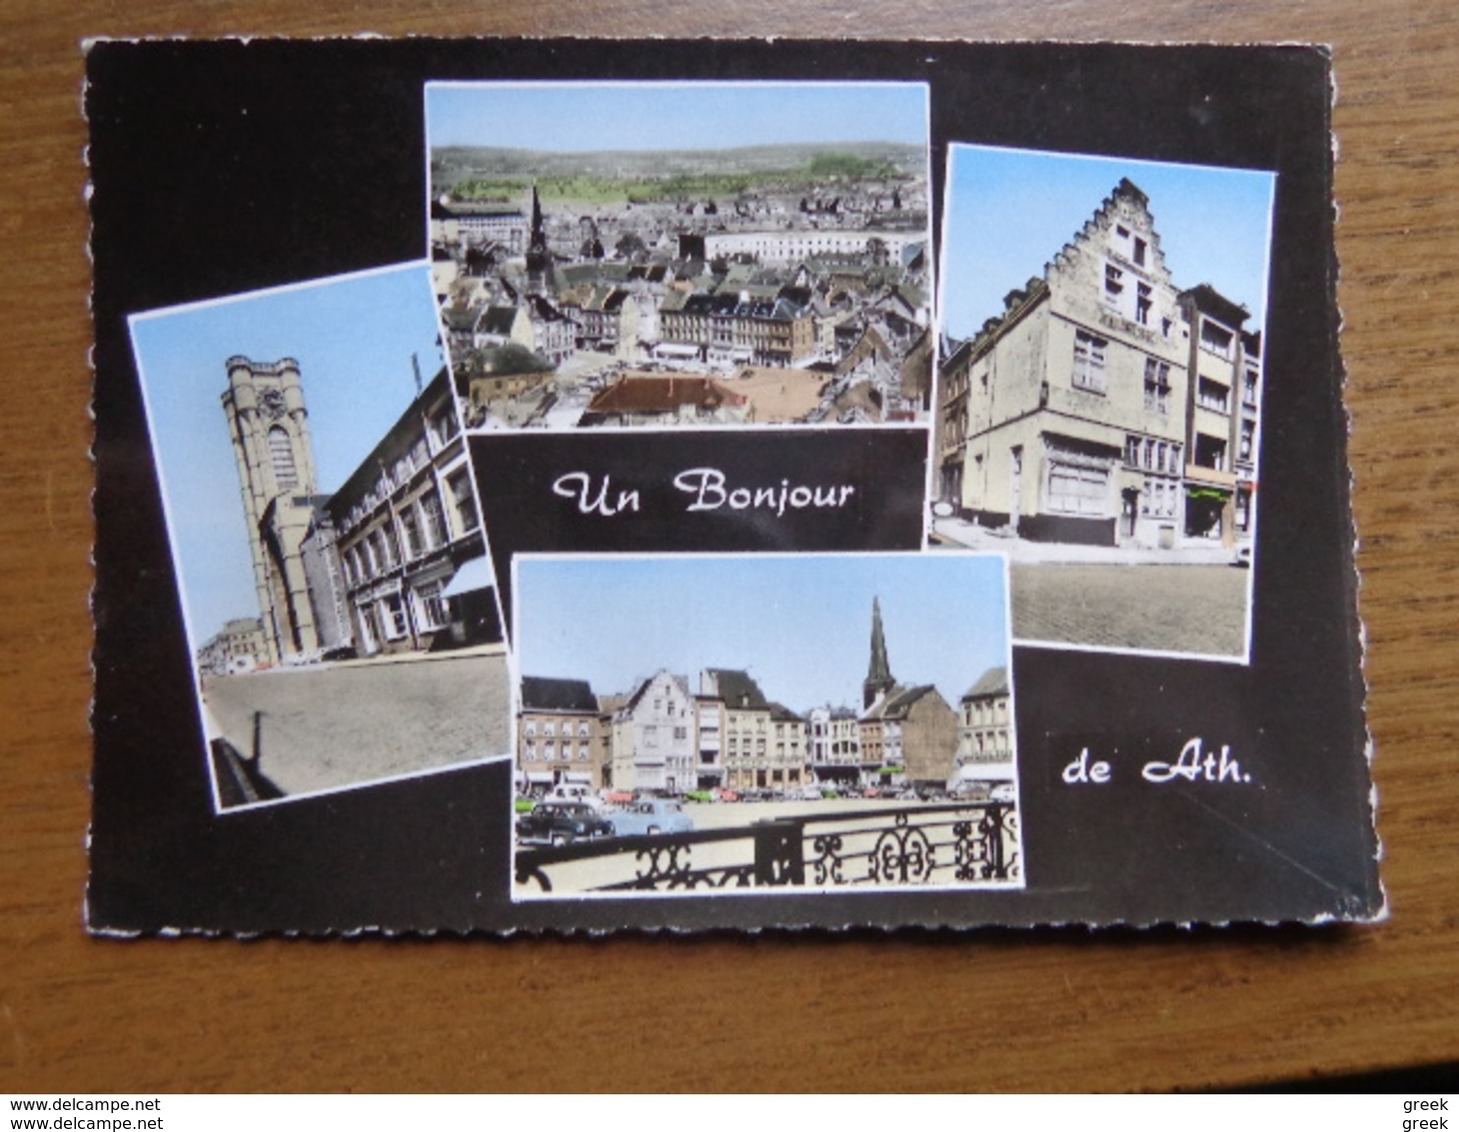 KOOPJE / Doos postkaarten (3kg690) Allerlei landen en thema's (oa griekenland, luxemburg, belgie ...) zie foto's